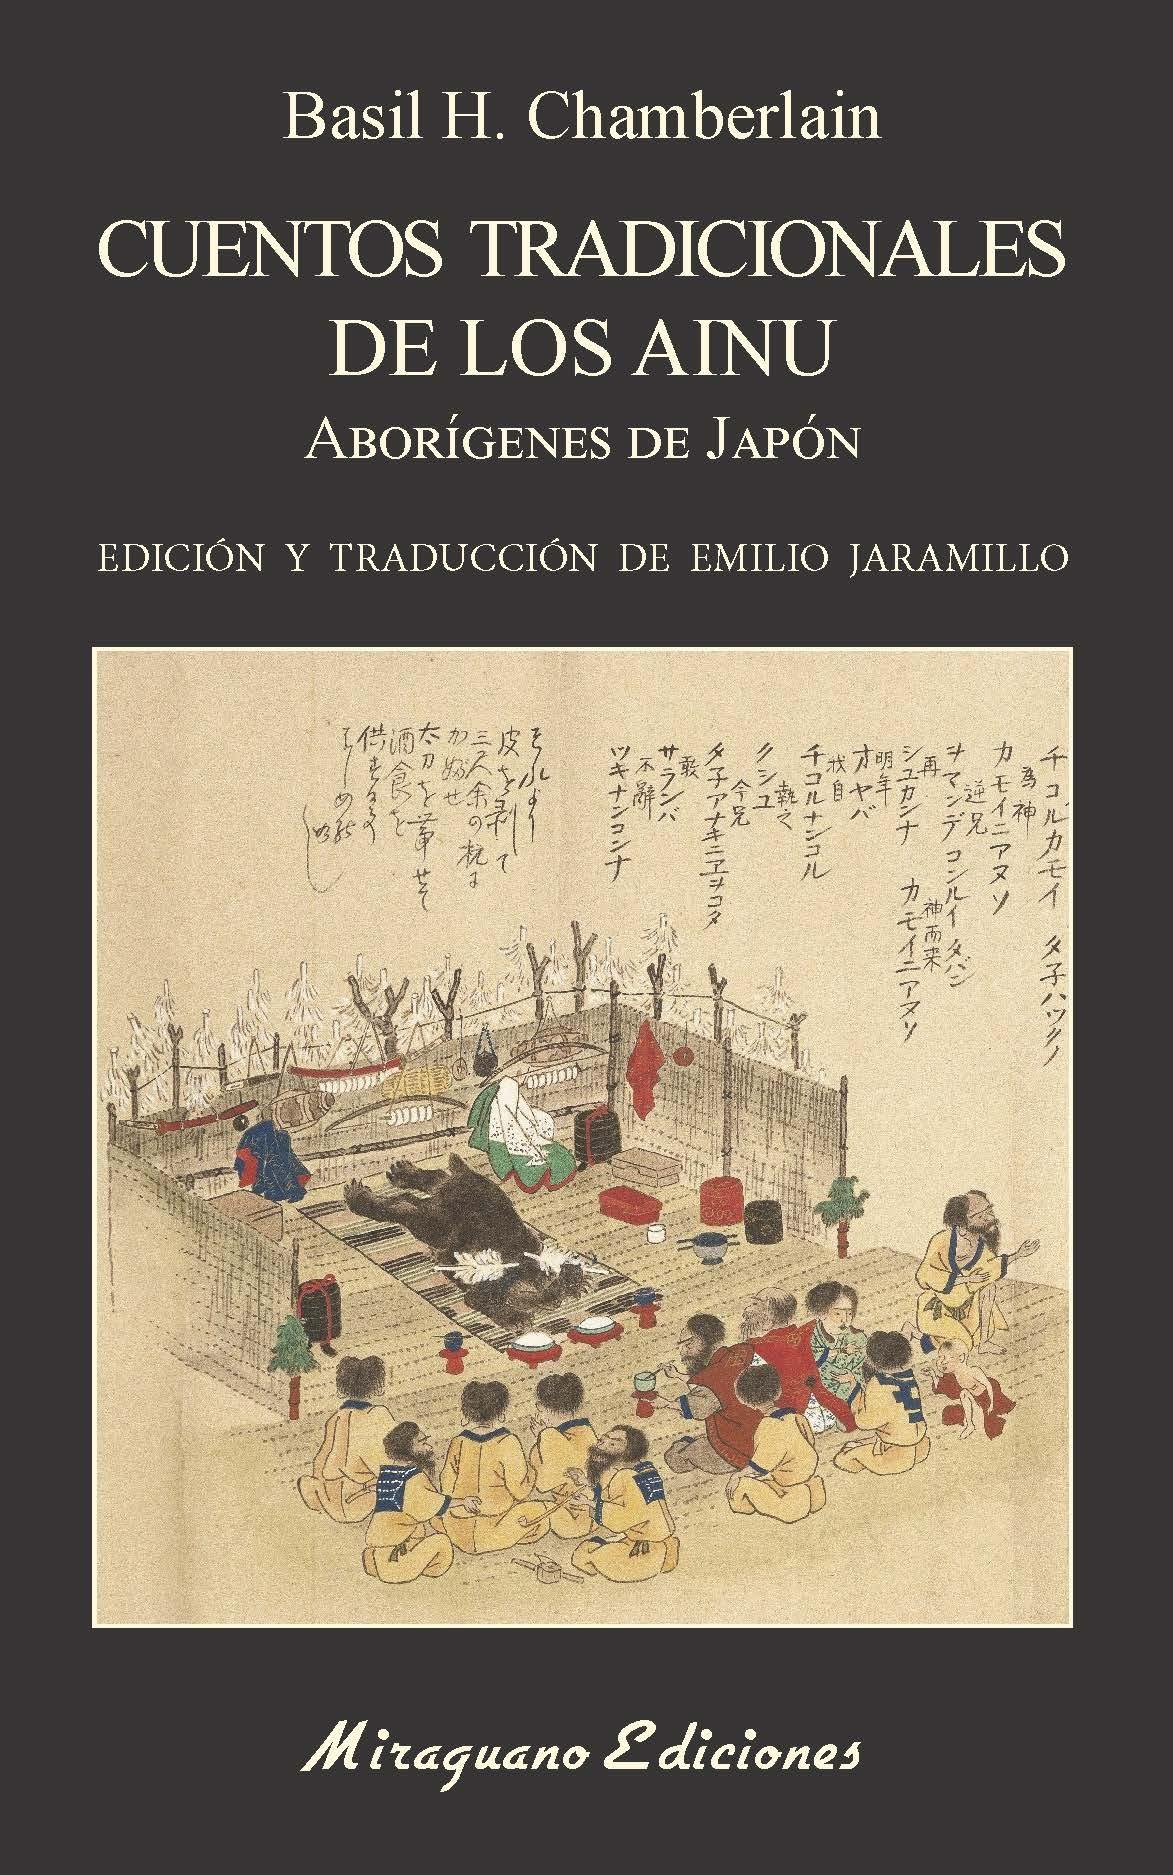 Cuentos tradicionales de los ainu "Aborígenes de Japón"